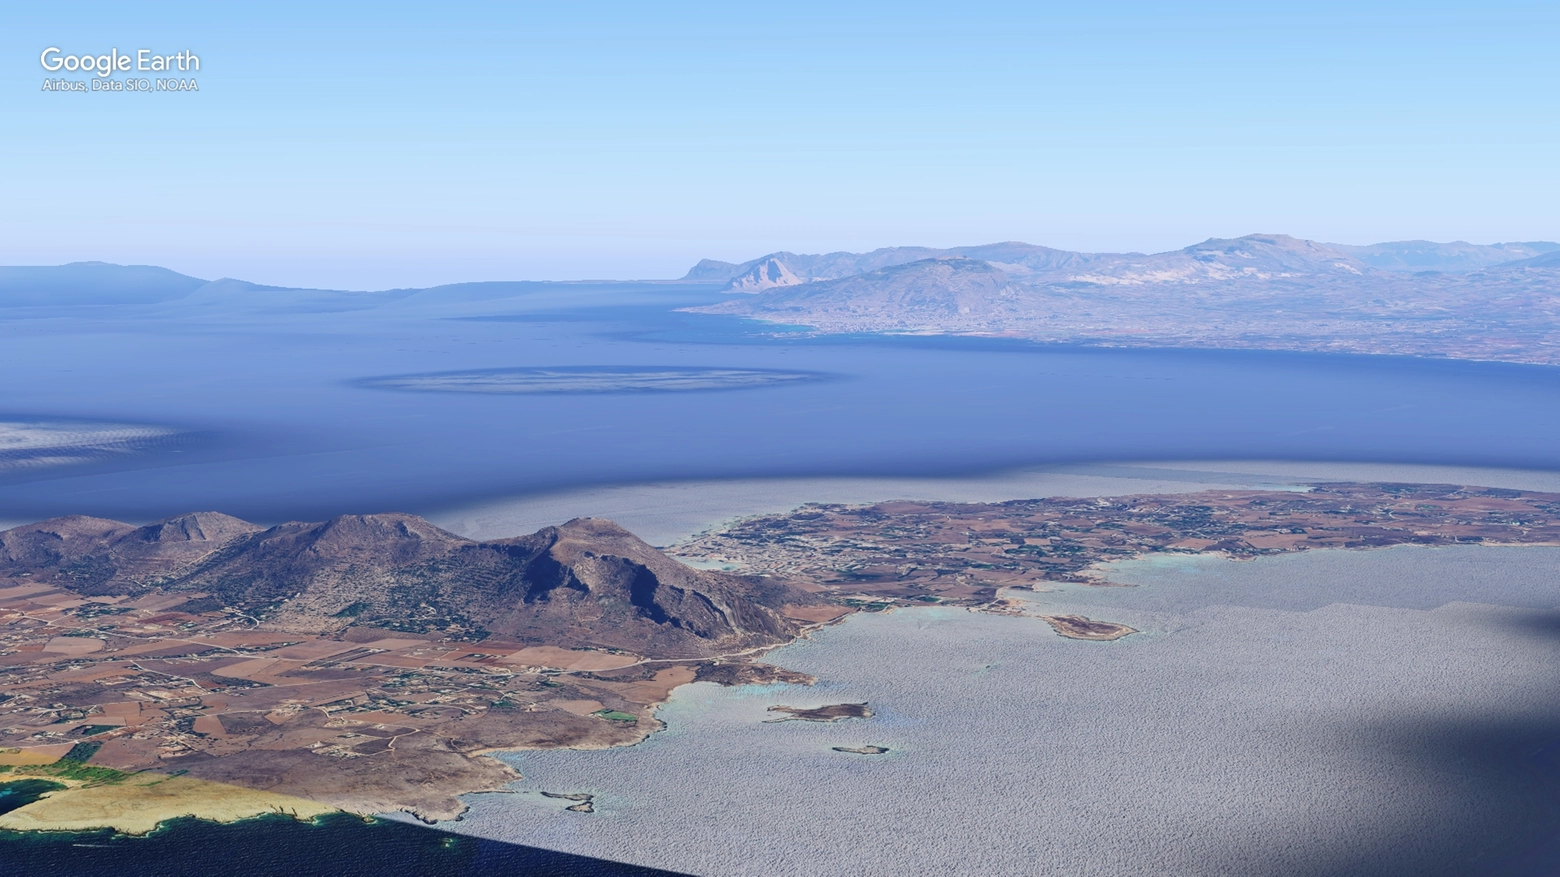 L'Isola di Favignana vista dal satellite (Google Earth)